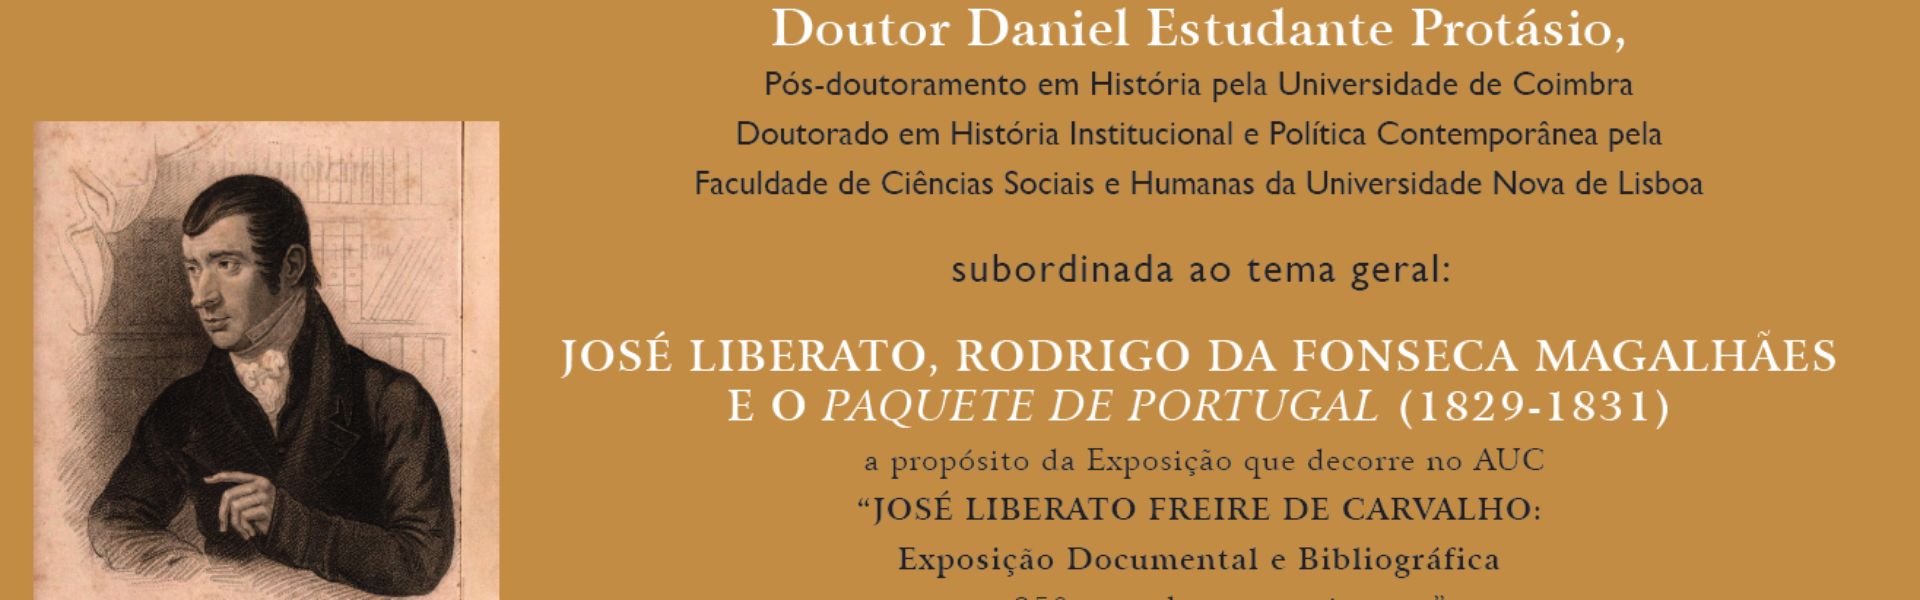 CONFERÊNCIA: José Liberato, Rodrigo da Fonseca Magalhães e o "Paquete de Portugal" (1829-1831)